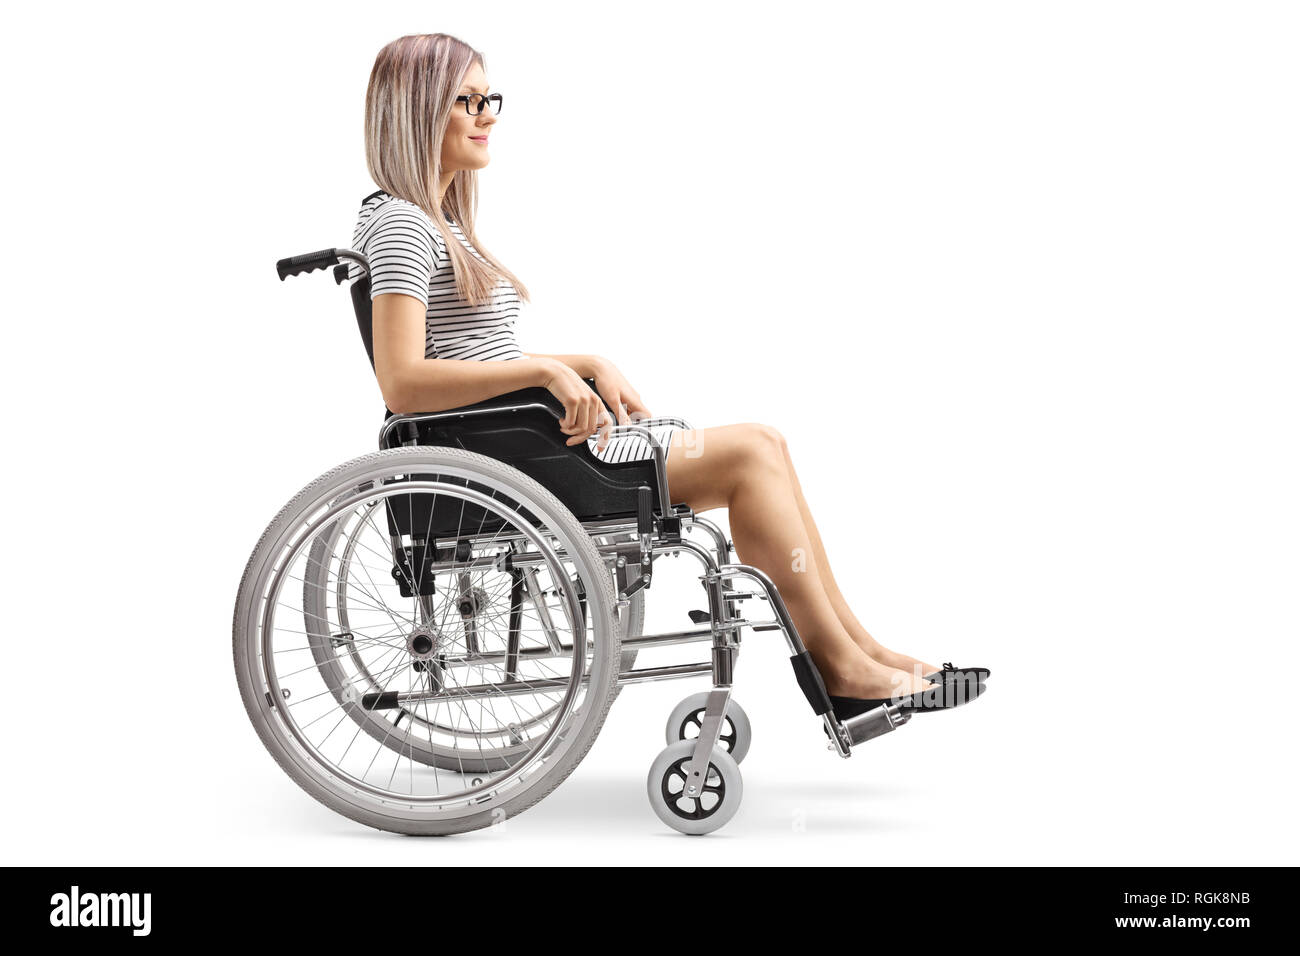 Photo de profil d'une jeune femme blonde dans un fauteuil roulant isolé sur fond blanc Banque D'Images